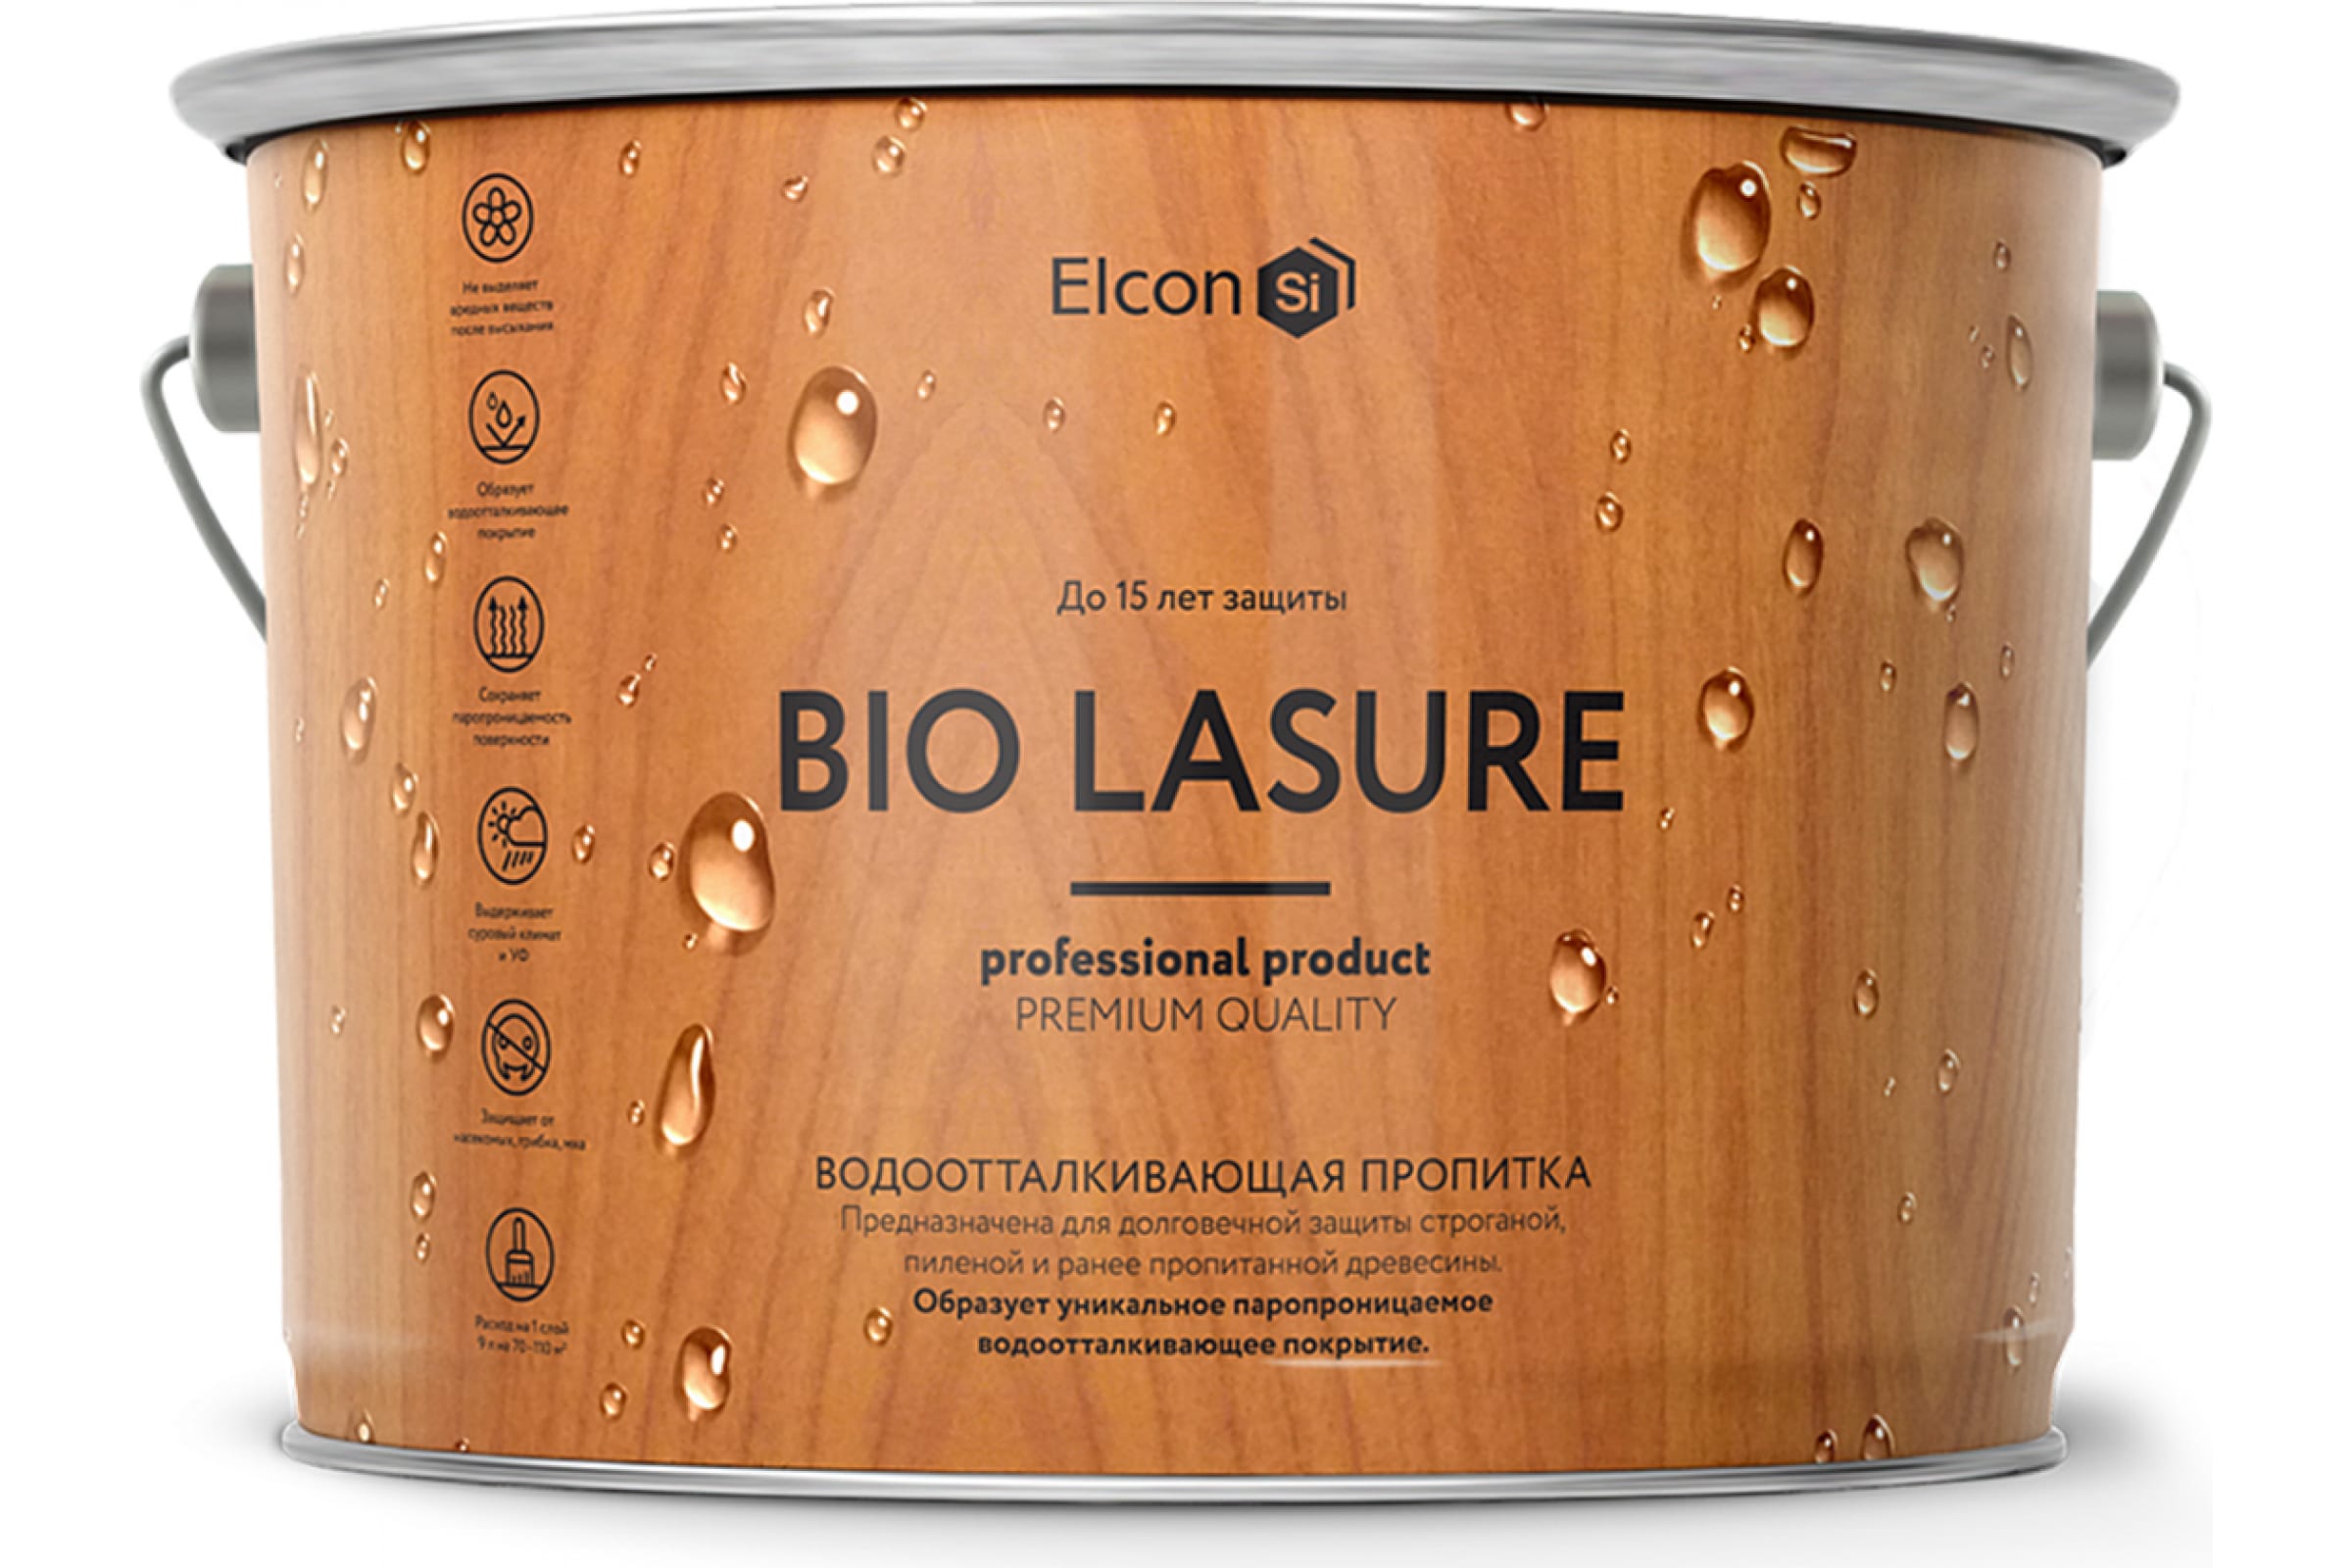 Elcon Bio Lasure водоотталкивающая пропитка для дерева, орех; 2 л, 00-00461950 пропитка для дерева elcon bio lasure водоотталкивающая бес ная 2 л